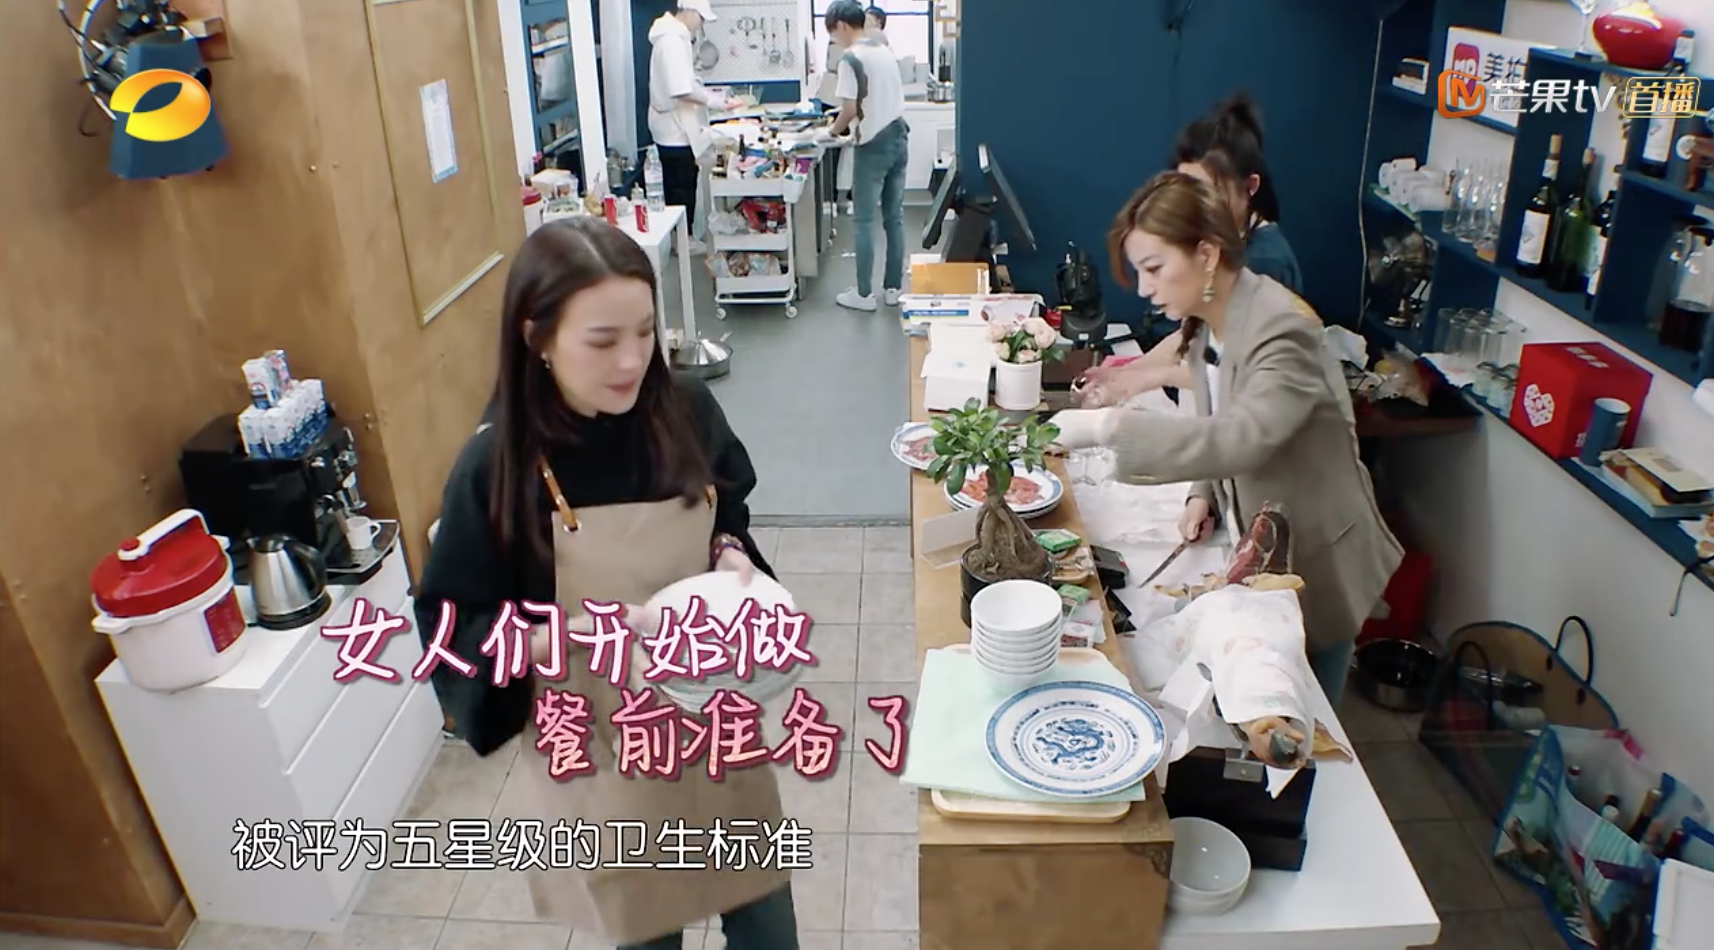 《中餐厅2》主厨日：王俊凯欢乐尬舞 白举纲用美图手机拍美食